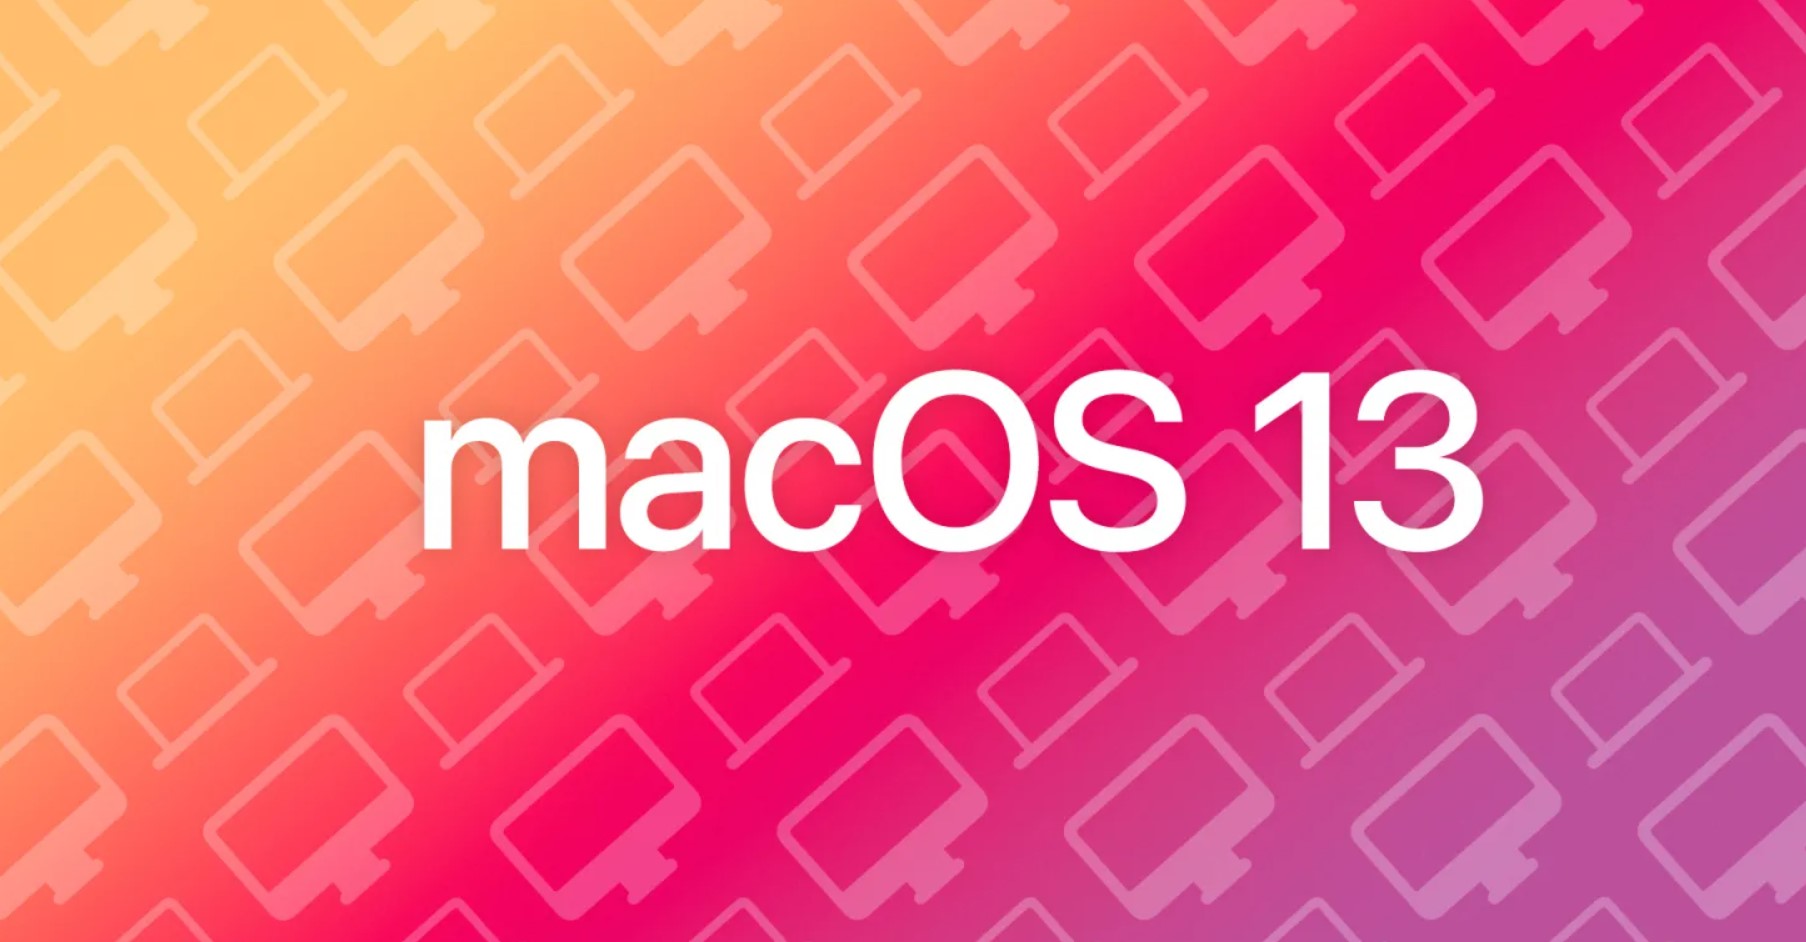 İşte macOS 13 sürümünde geleceği tahmin edilen özellikler